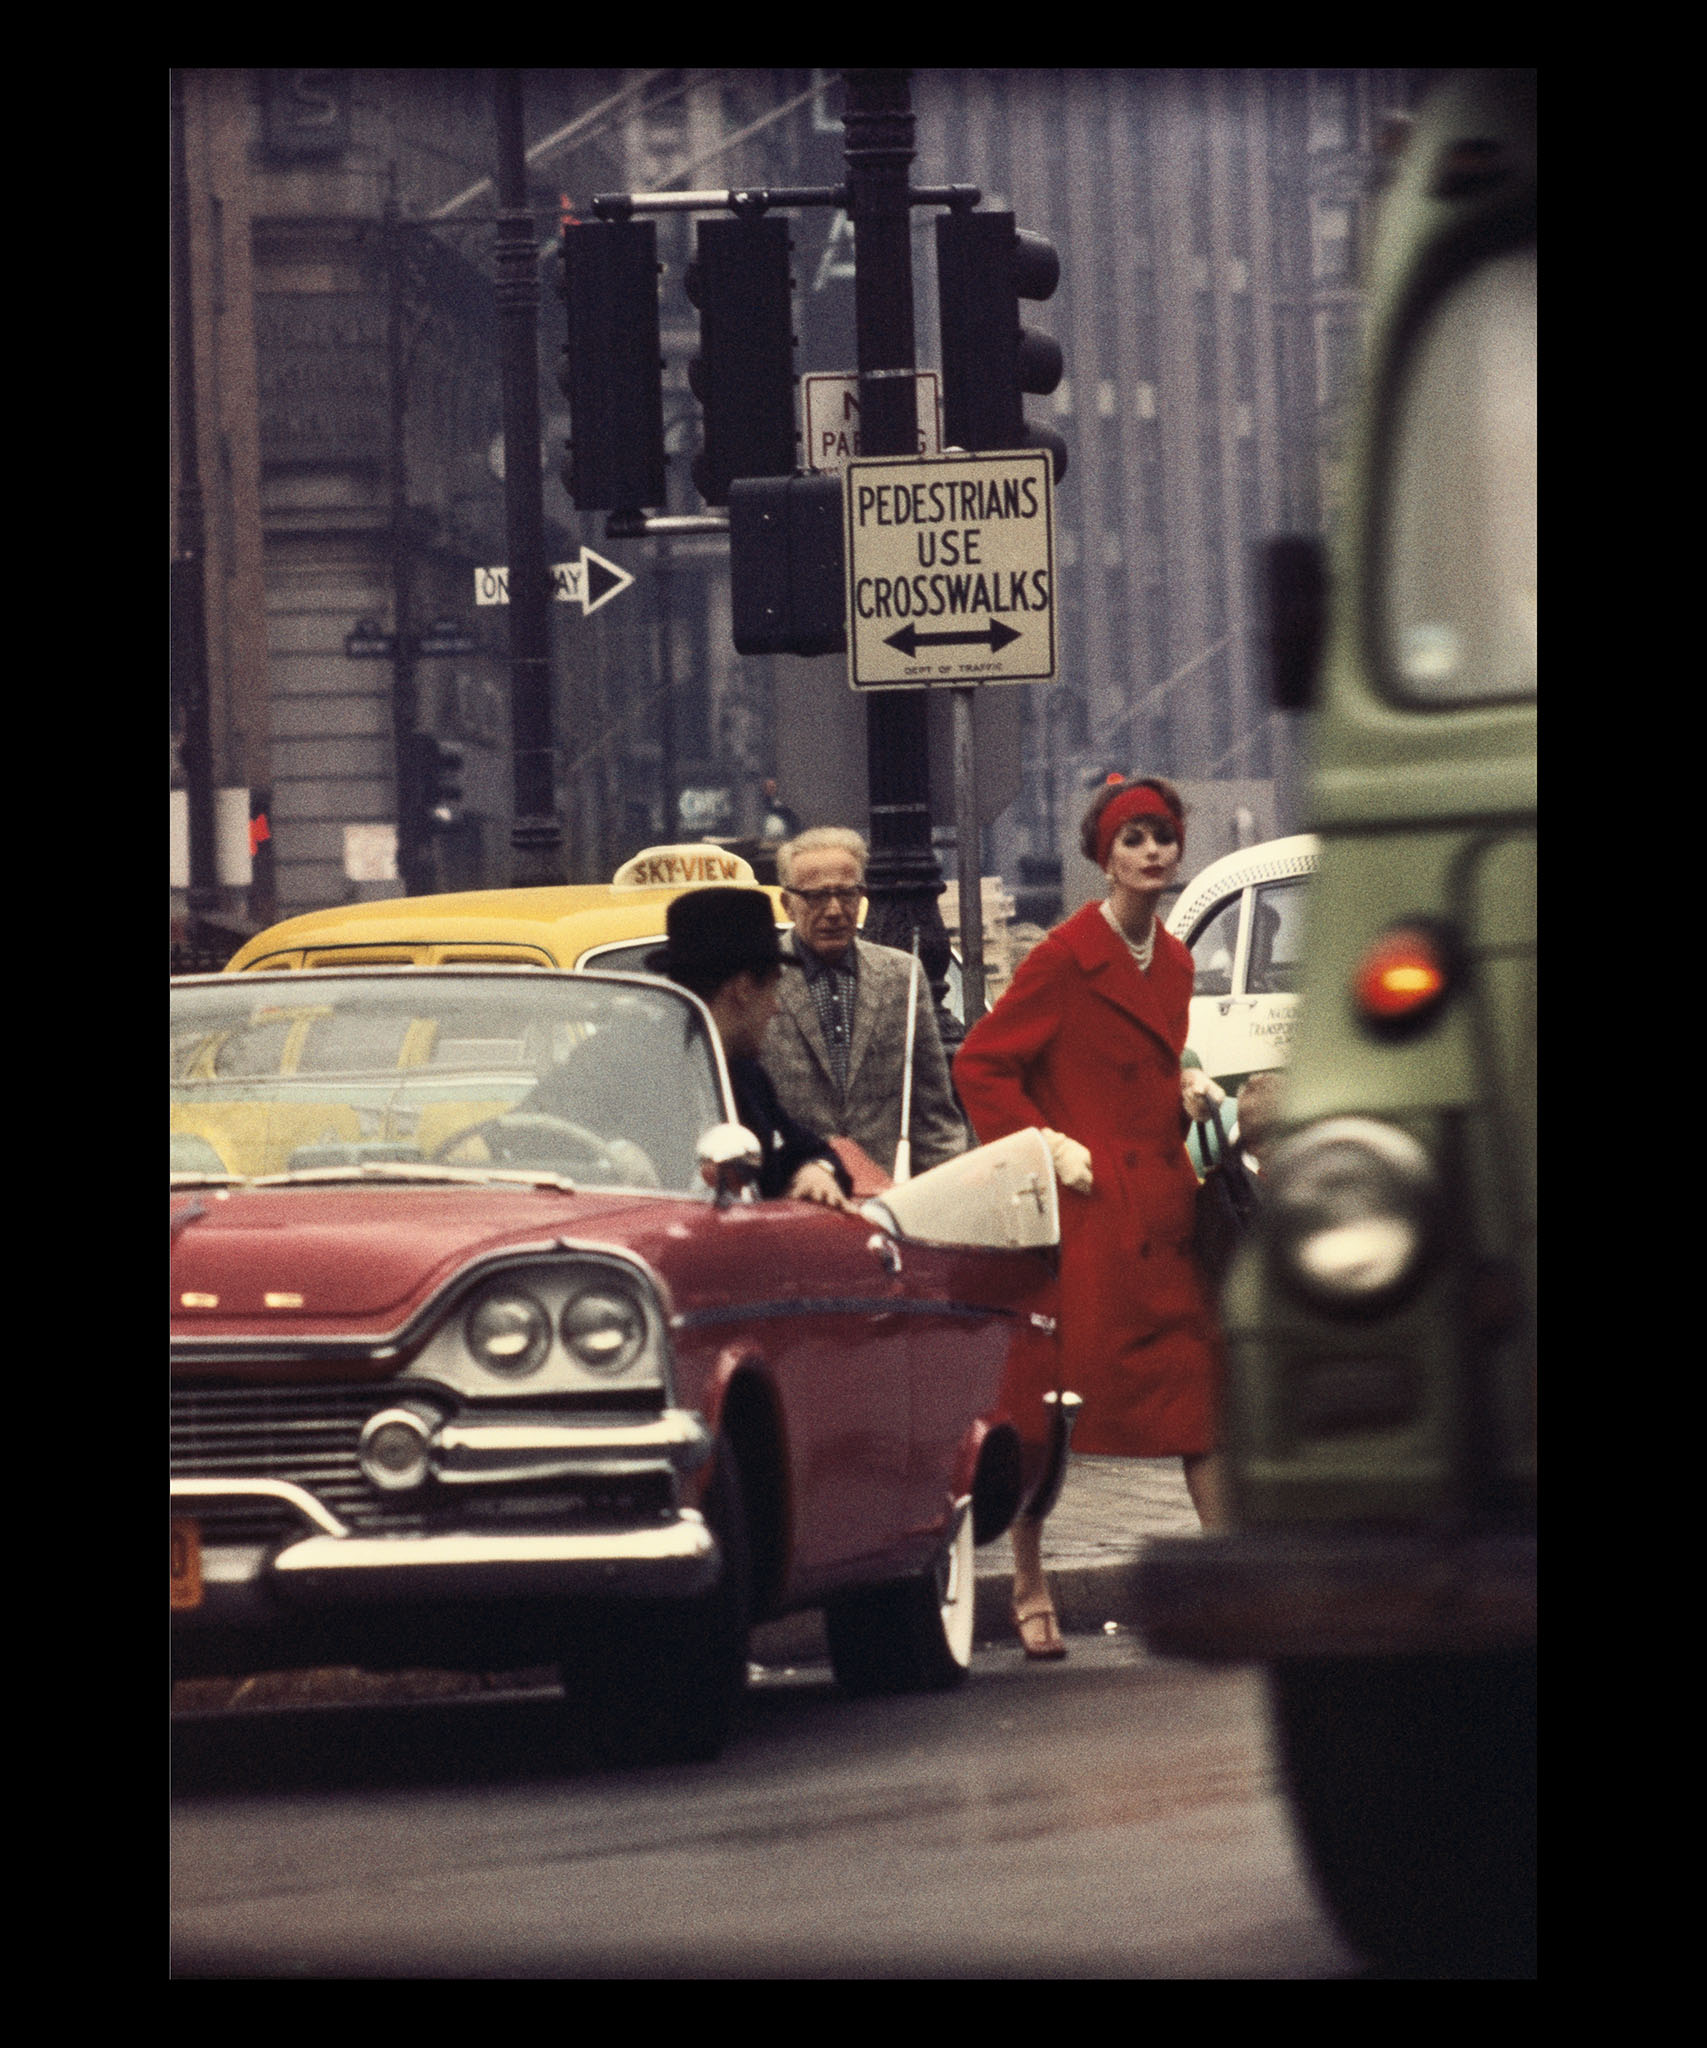 Anne St-Marie + Cruiser in Traffic, New York (Vogue), Etats-Unis, 1958